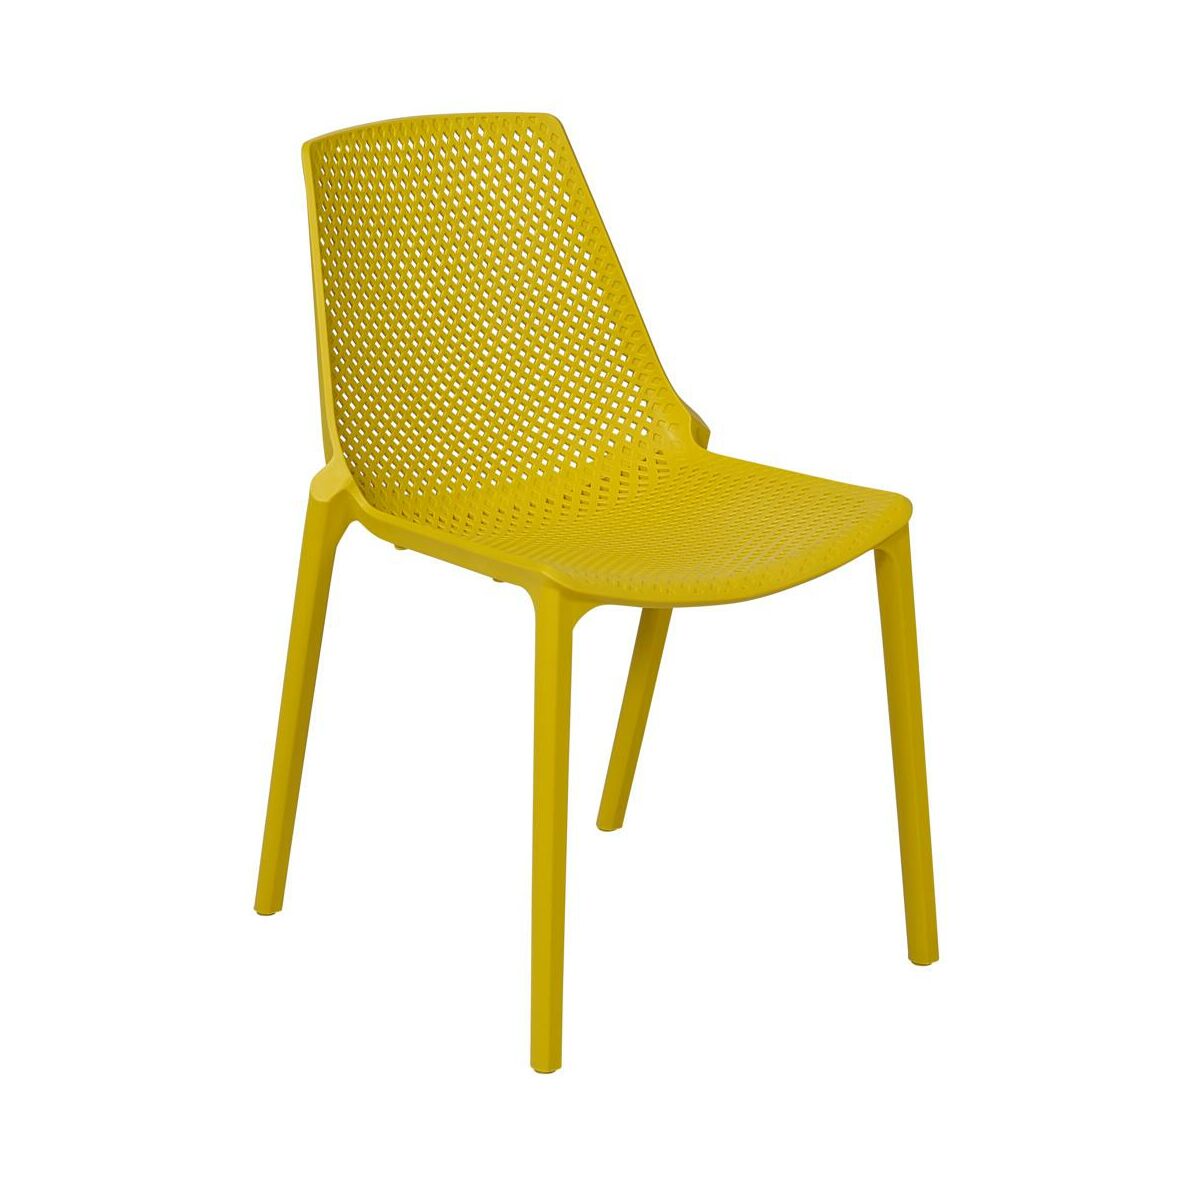 Krzeslo Ogrodowe Stockholm Plastikowe Zolte Krzesla Fotele Lawki Ogrodowe W Atrakcyjnej Cenie W Sklepach Leroy Merlin